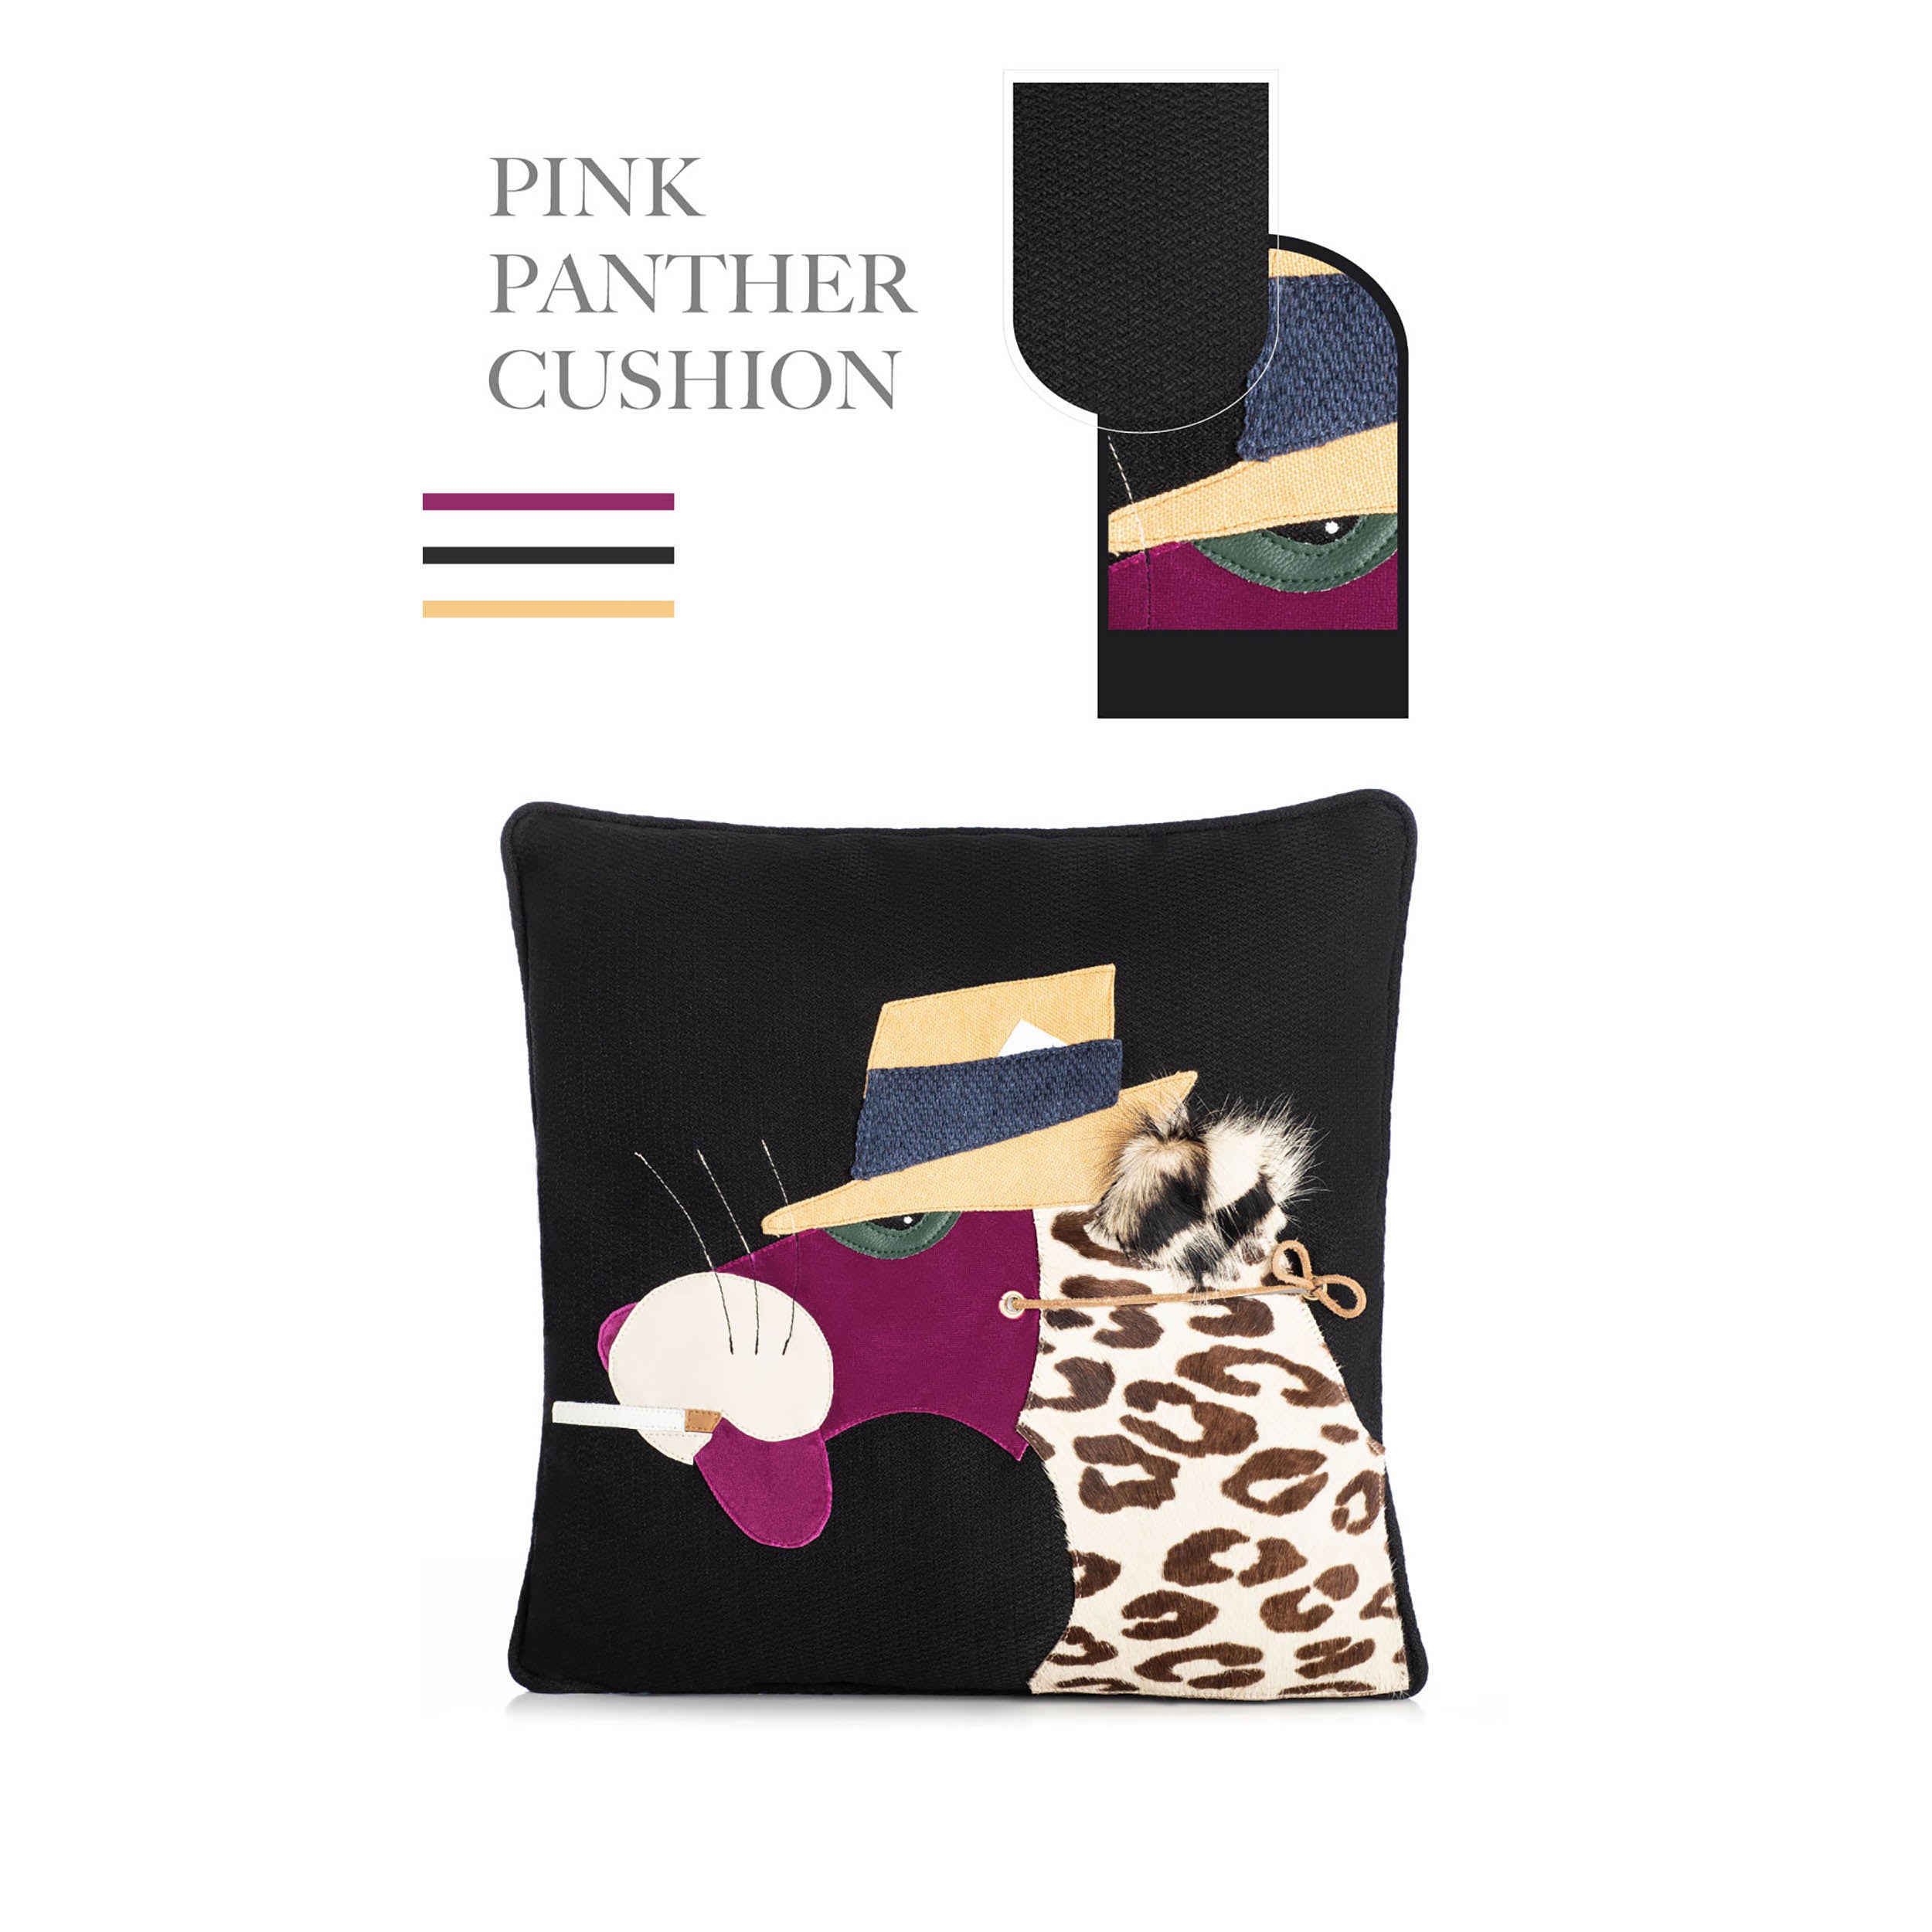 Pink Panther Cushion